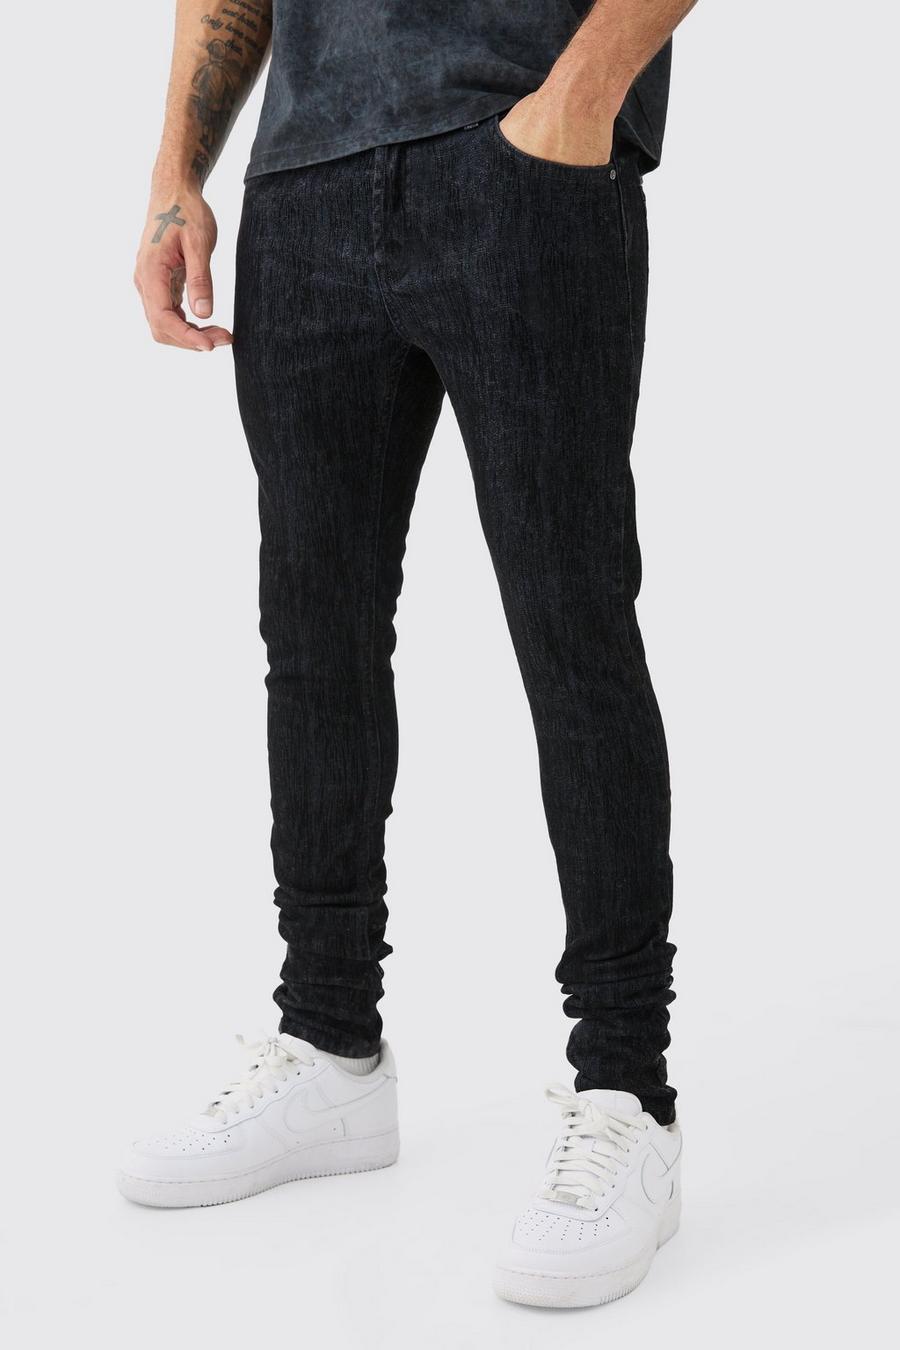 Jeans Skinny Fit Stretch in denim spazzolato con pieghe sul fondo, True black